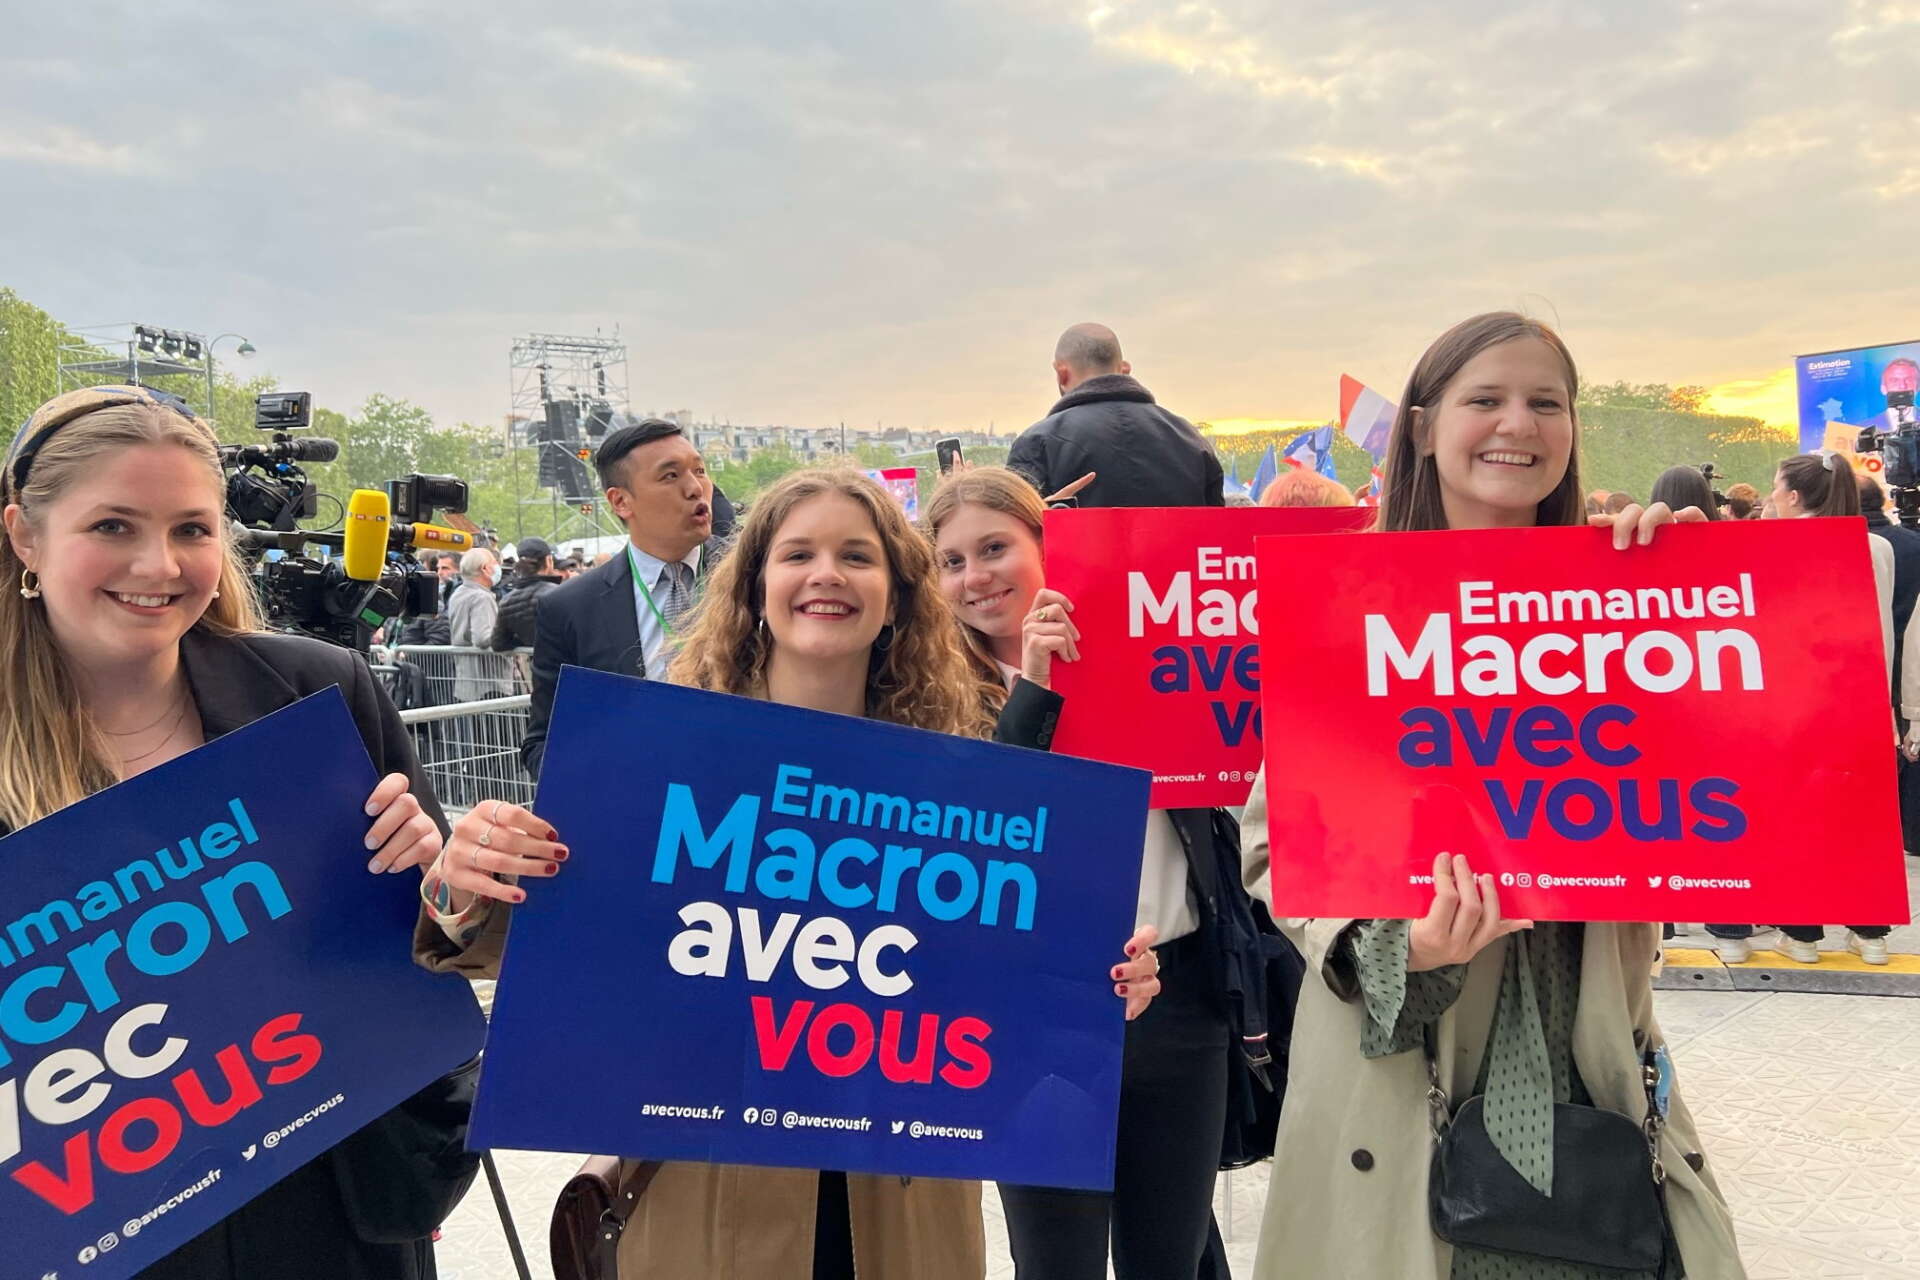 Danskt stöd till Emmanuel Macron. Julie Ruby står längst till höger i bild.